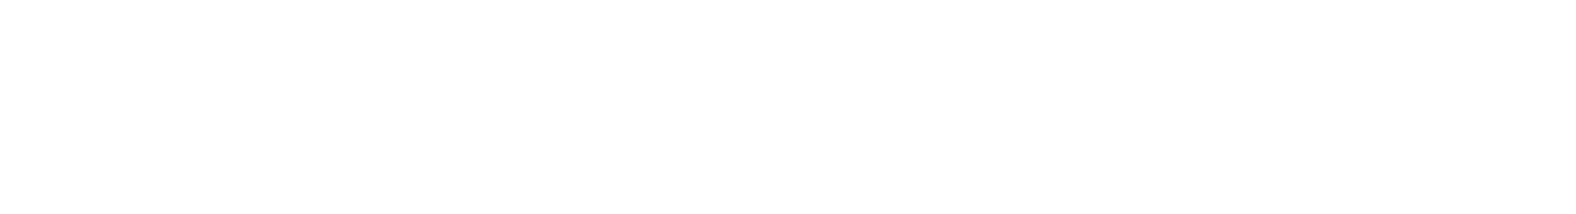 Savers Value Village logo grand pour les fonds sombres (PNG transparent)